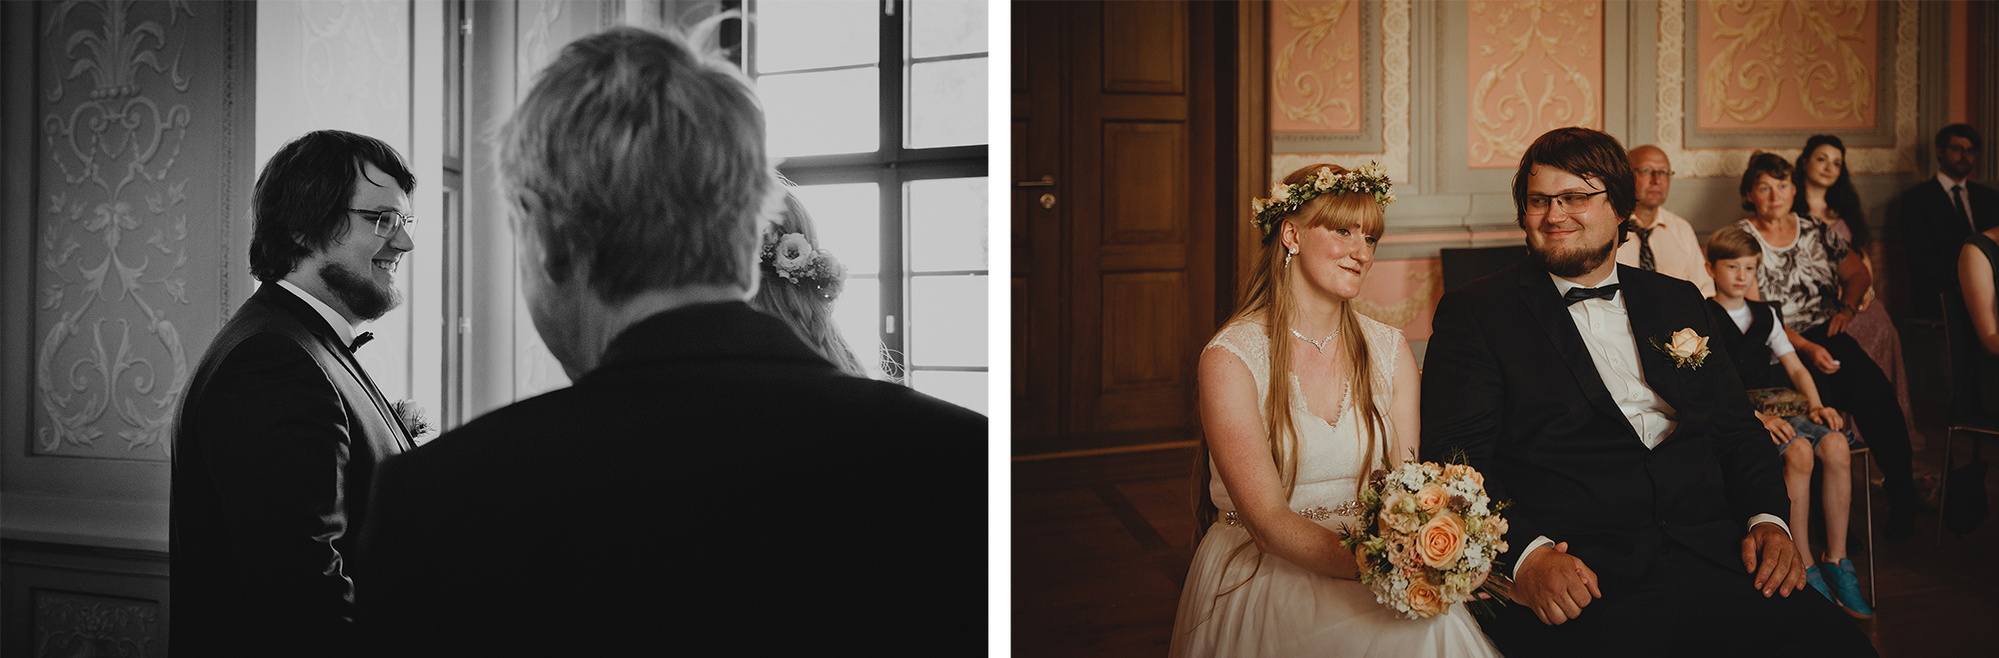 Braut und Bräutigam sehen sich beim First Look im Standesamt Weißenfels zum ersten Mal am Hochzeitstag.
